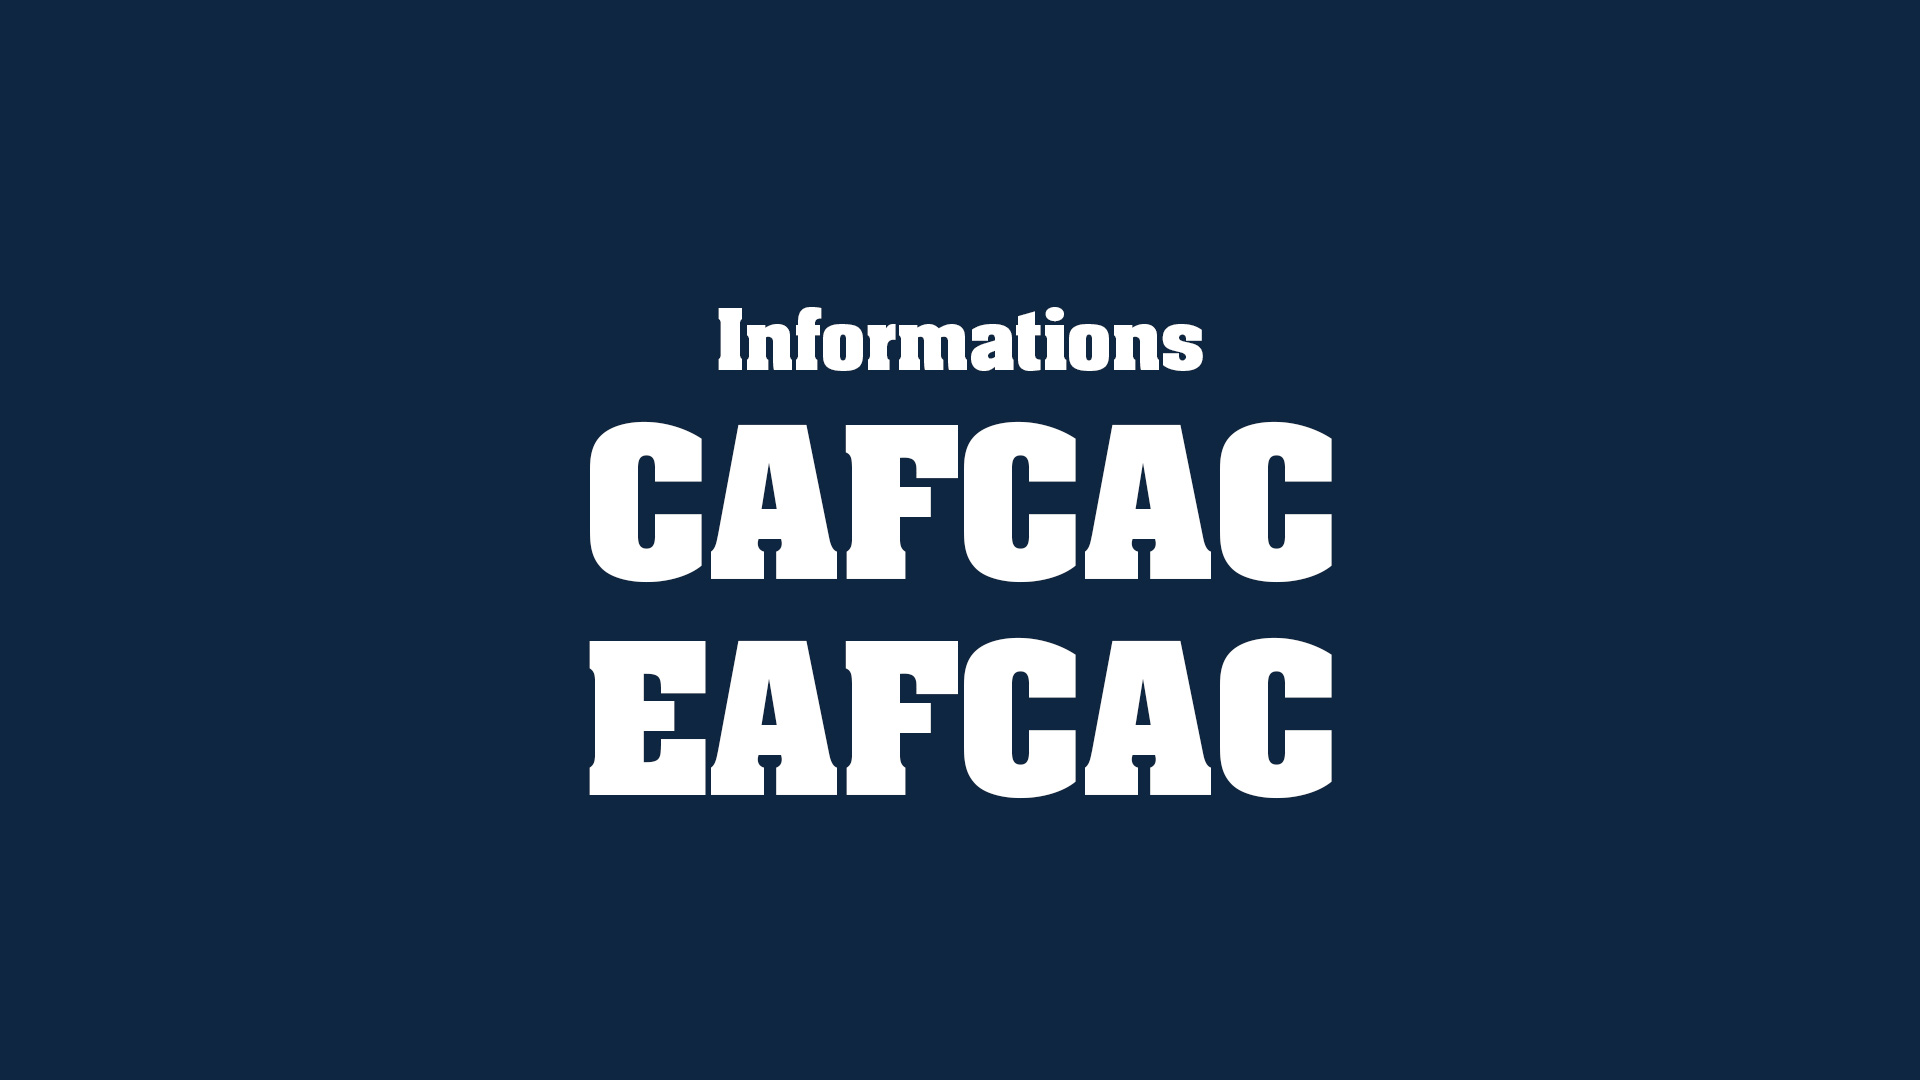 devenir_auditeur_independant-actus_infos_cafcac_eafcac